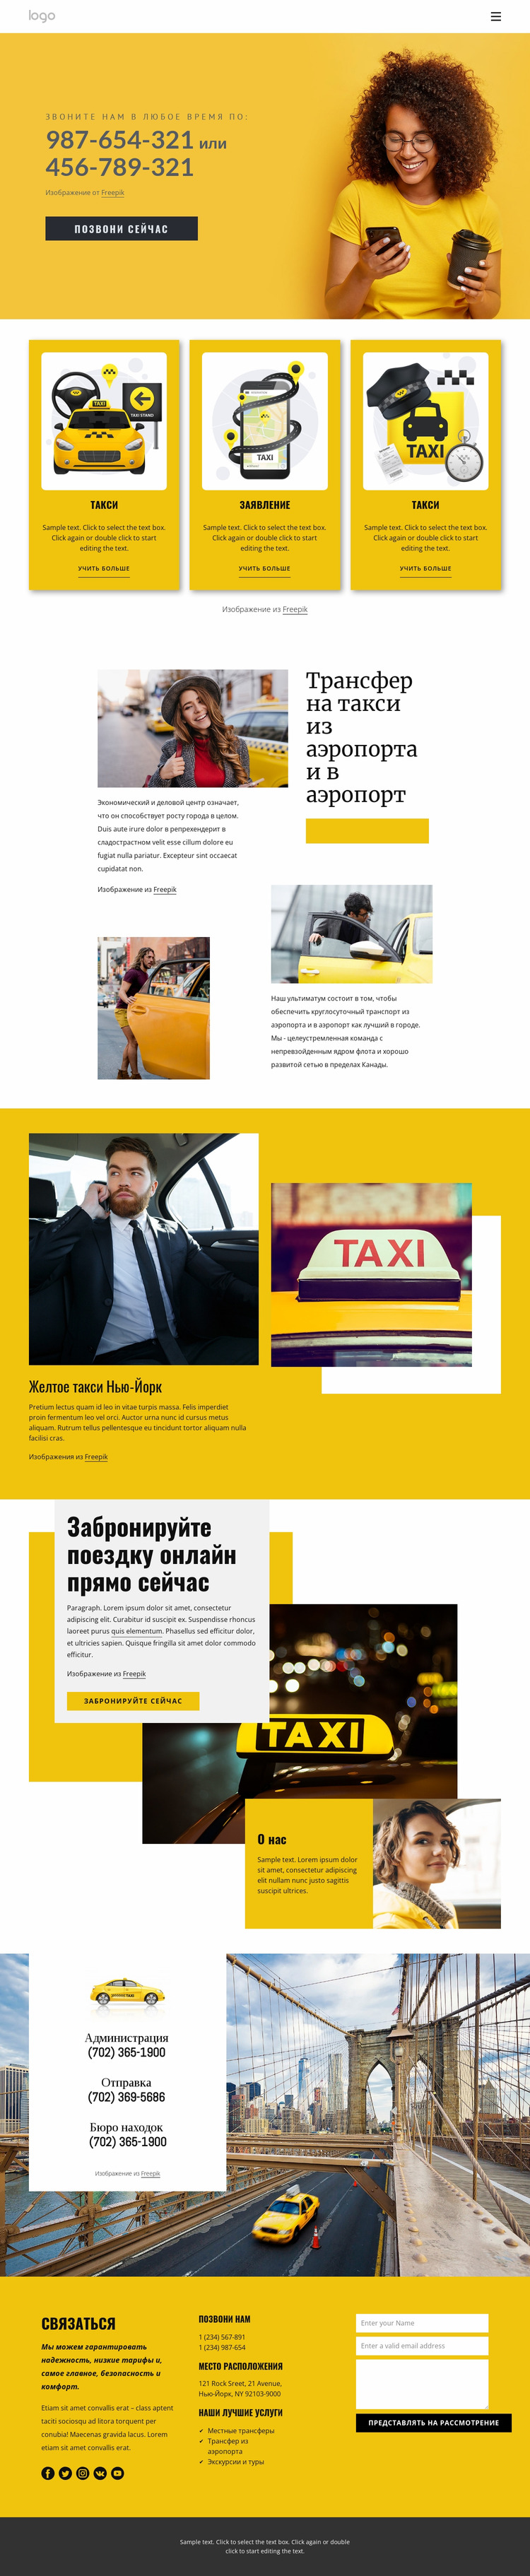 Качественное такси Шаблон Joomla